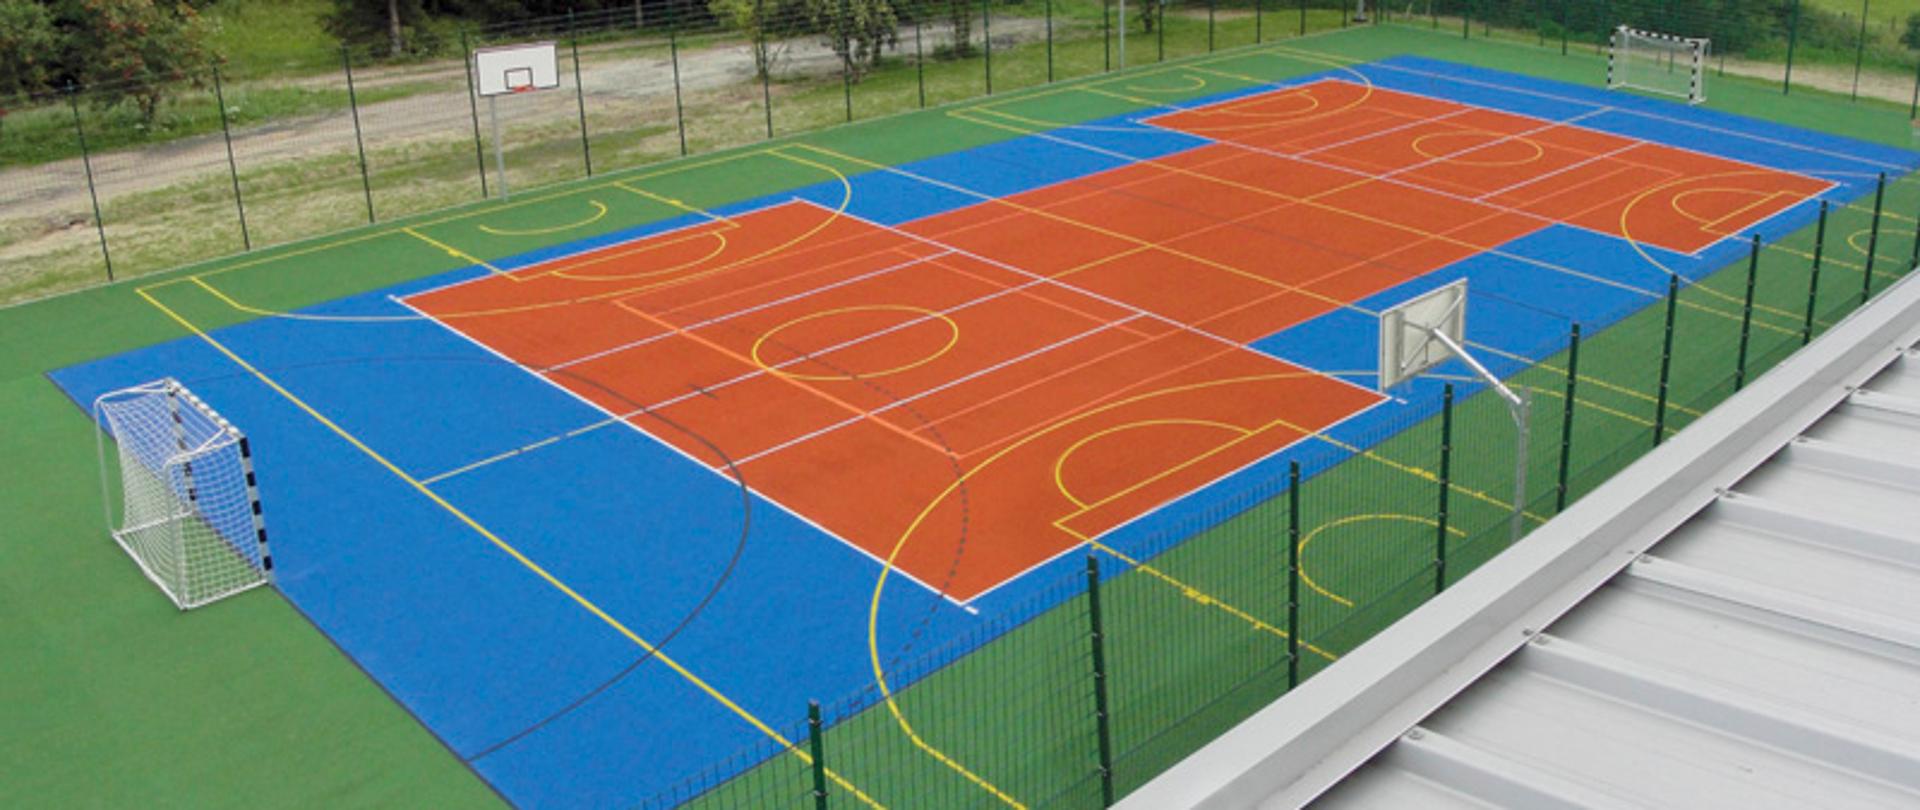 boisko typu Orlik o sztucznej zielono-niebiesko-pomarańczowej nawierzchni z bramkami do piłki ręcznej i koszami do koszykówki, na boisku żółte i białe linie wyznaczające poszczególne obszary boiska